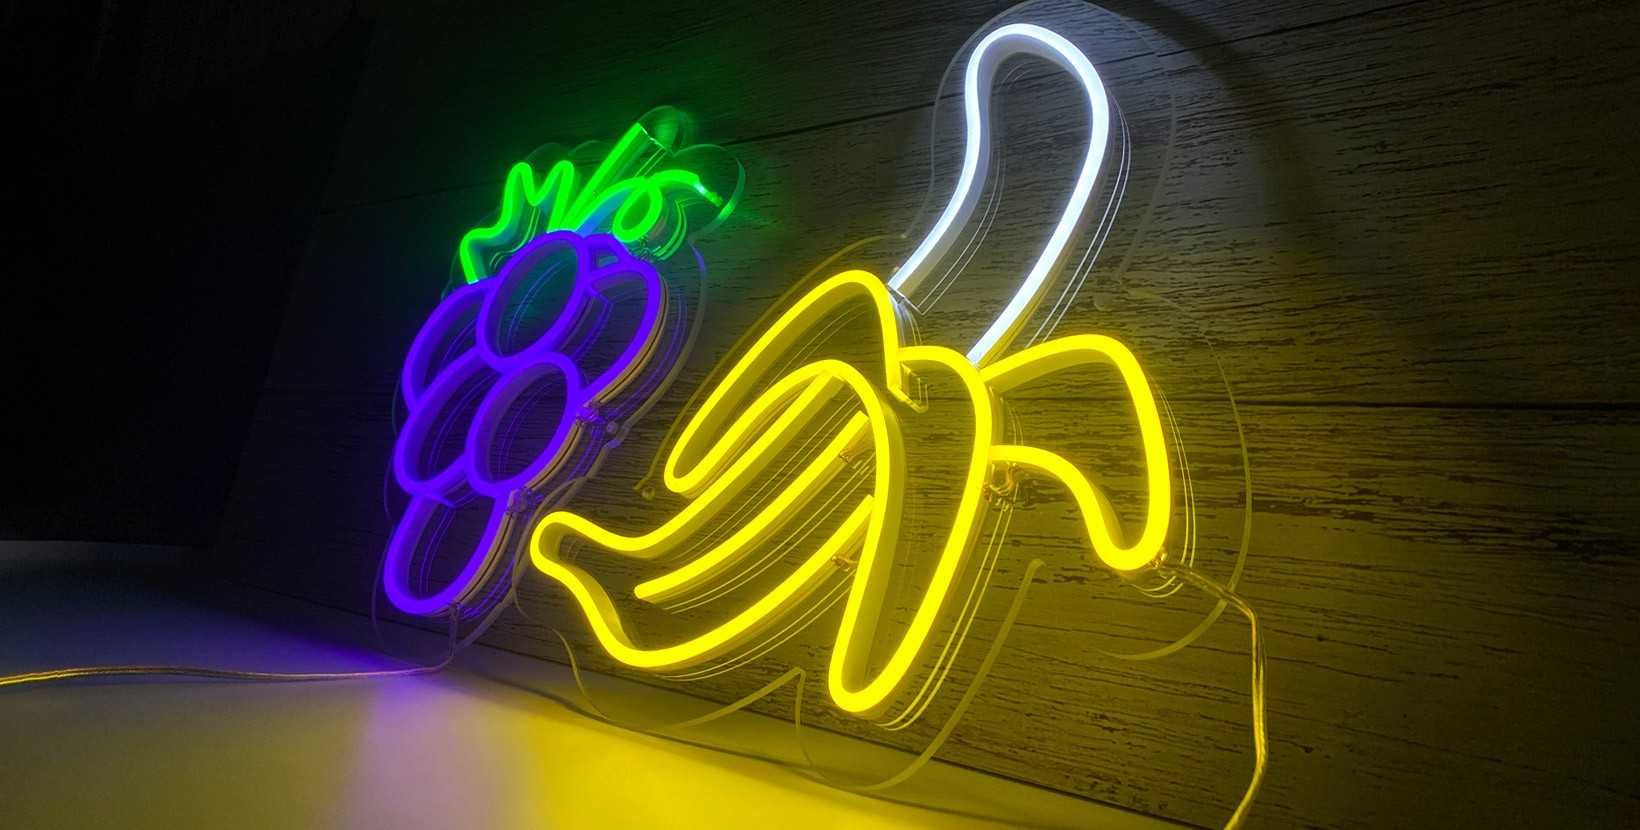 Letreiros em Neon Led, Reclames luminosos personalizados